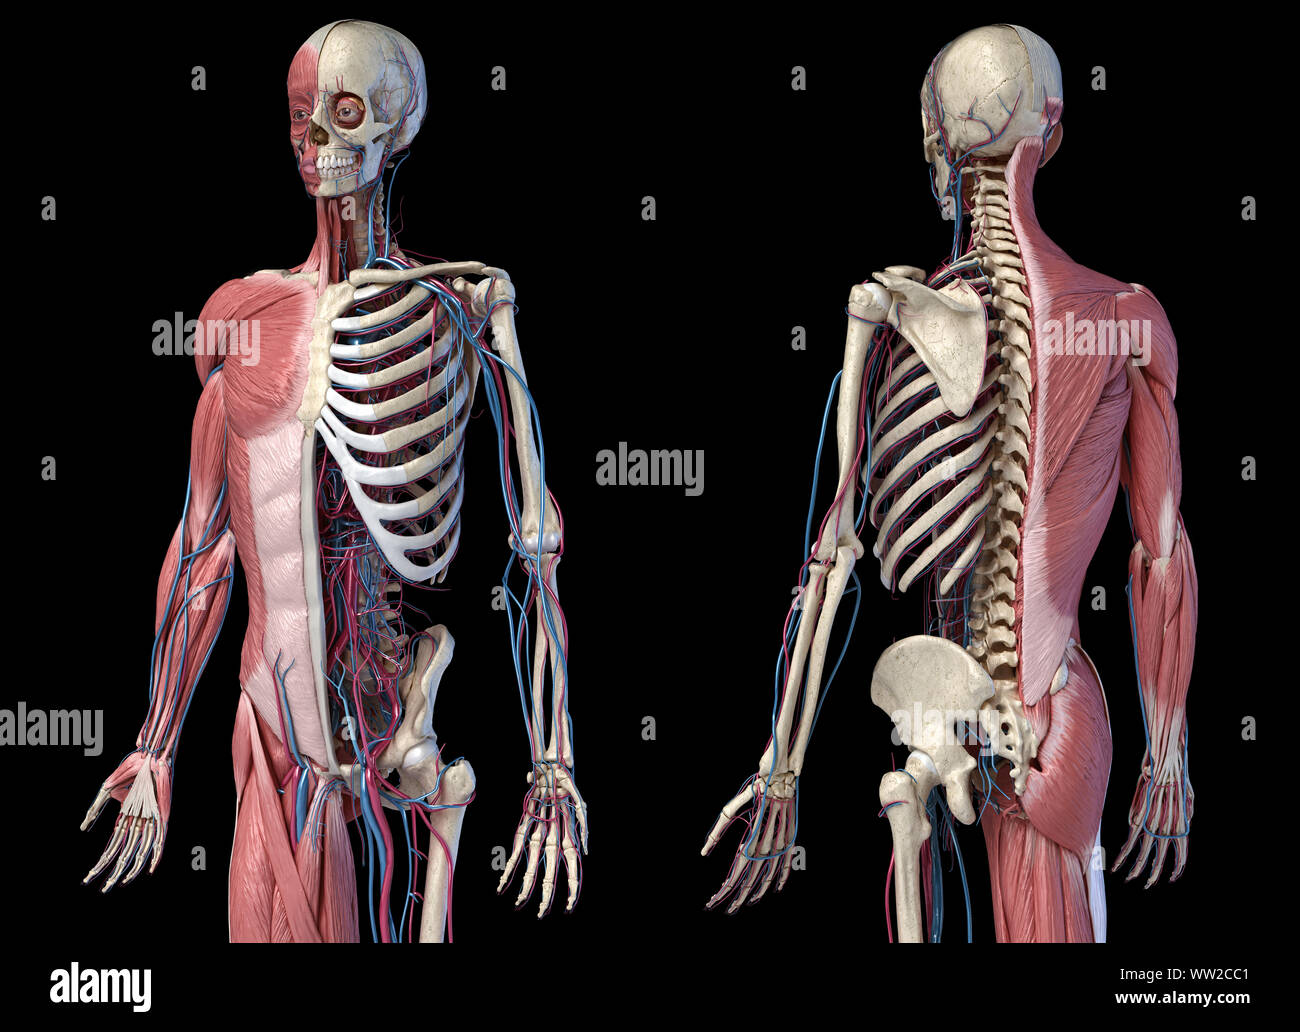 L'anatomie humaine 3/4 corps squelettique, musculaire et cardiovasculaire. Vues avant et arrière Perspective, sur fond noir. 3d illustration Banque D'Images